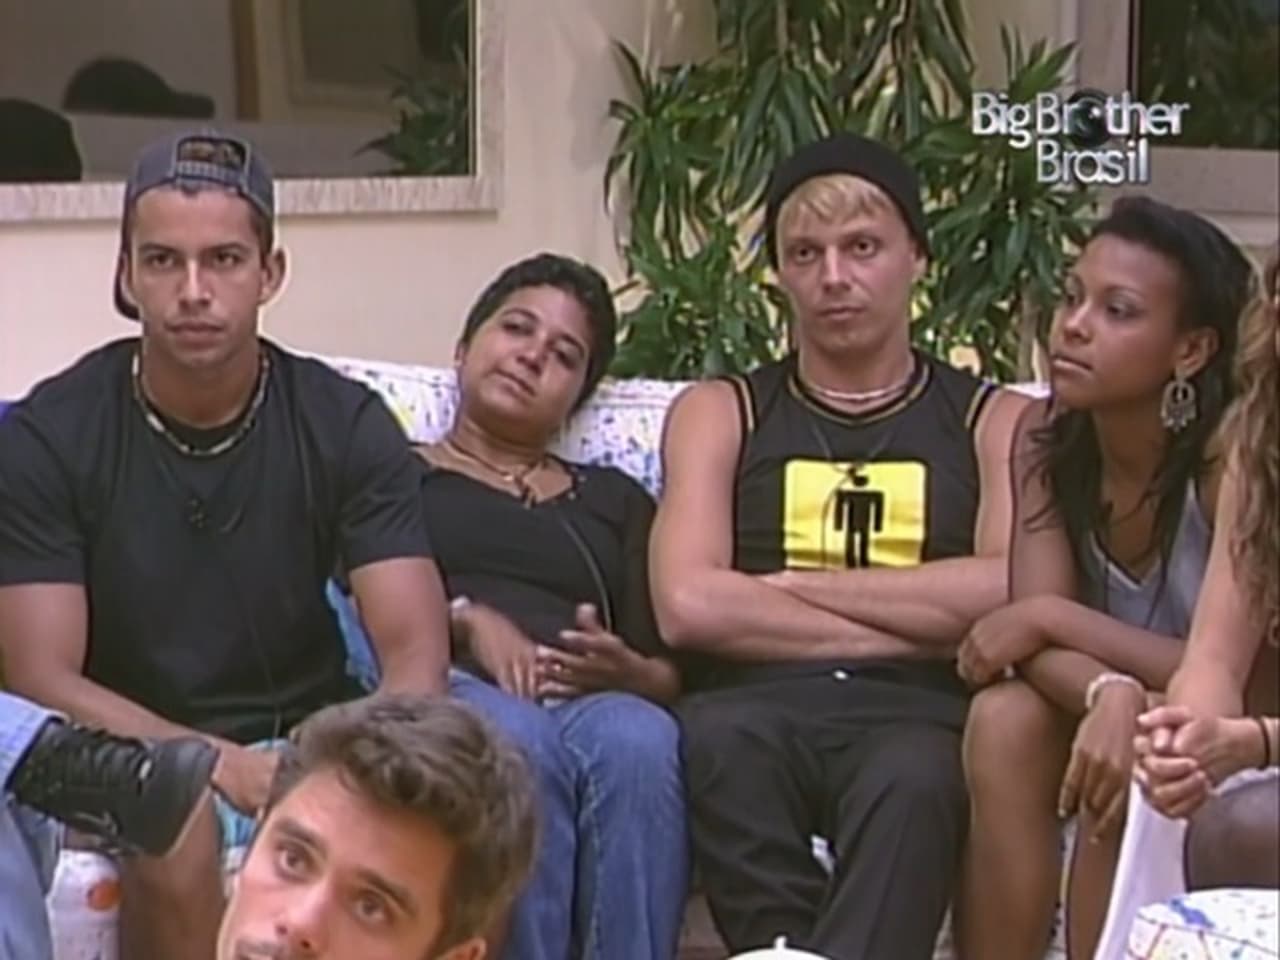 Big Brother Brasil - Season 4 Episode 21 : Episode 21